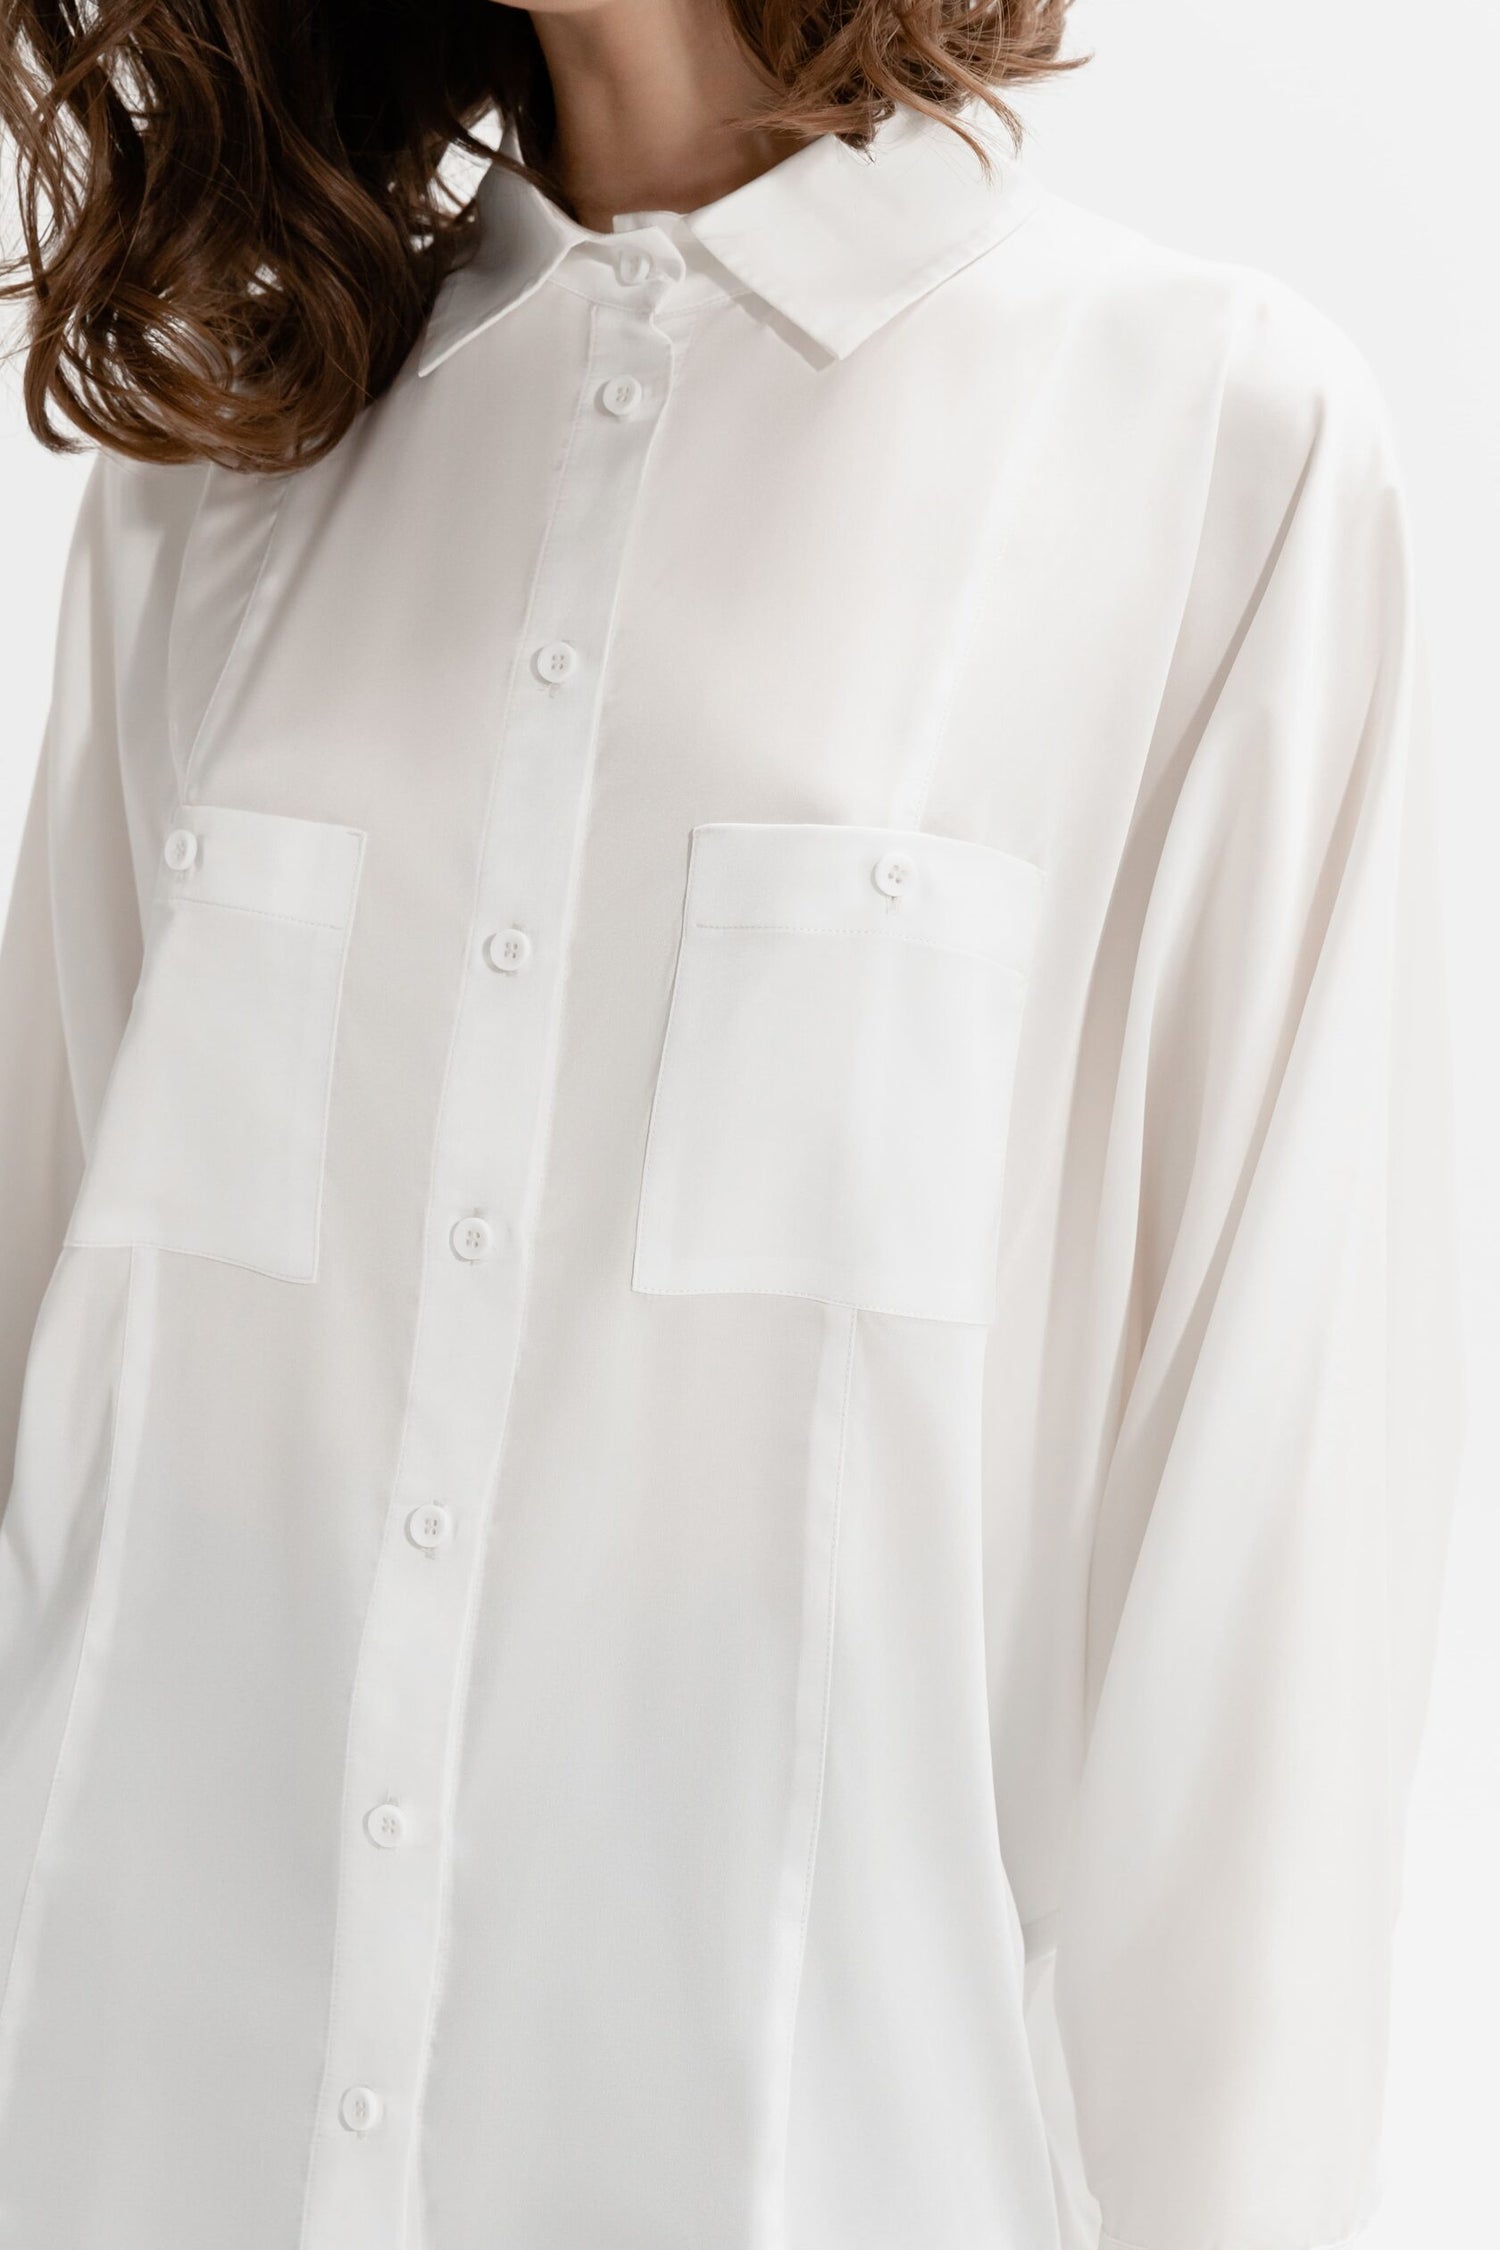 White silk blouse 2299 (mint)